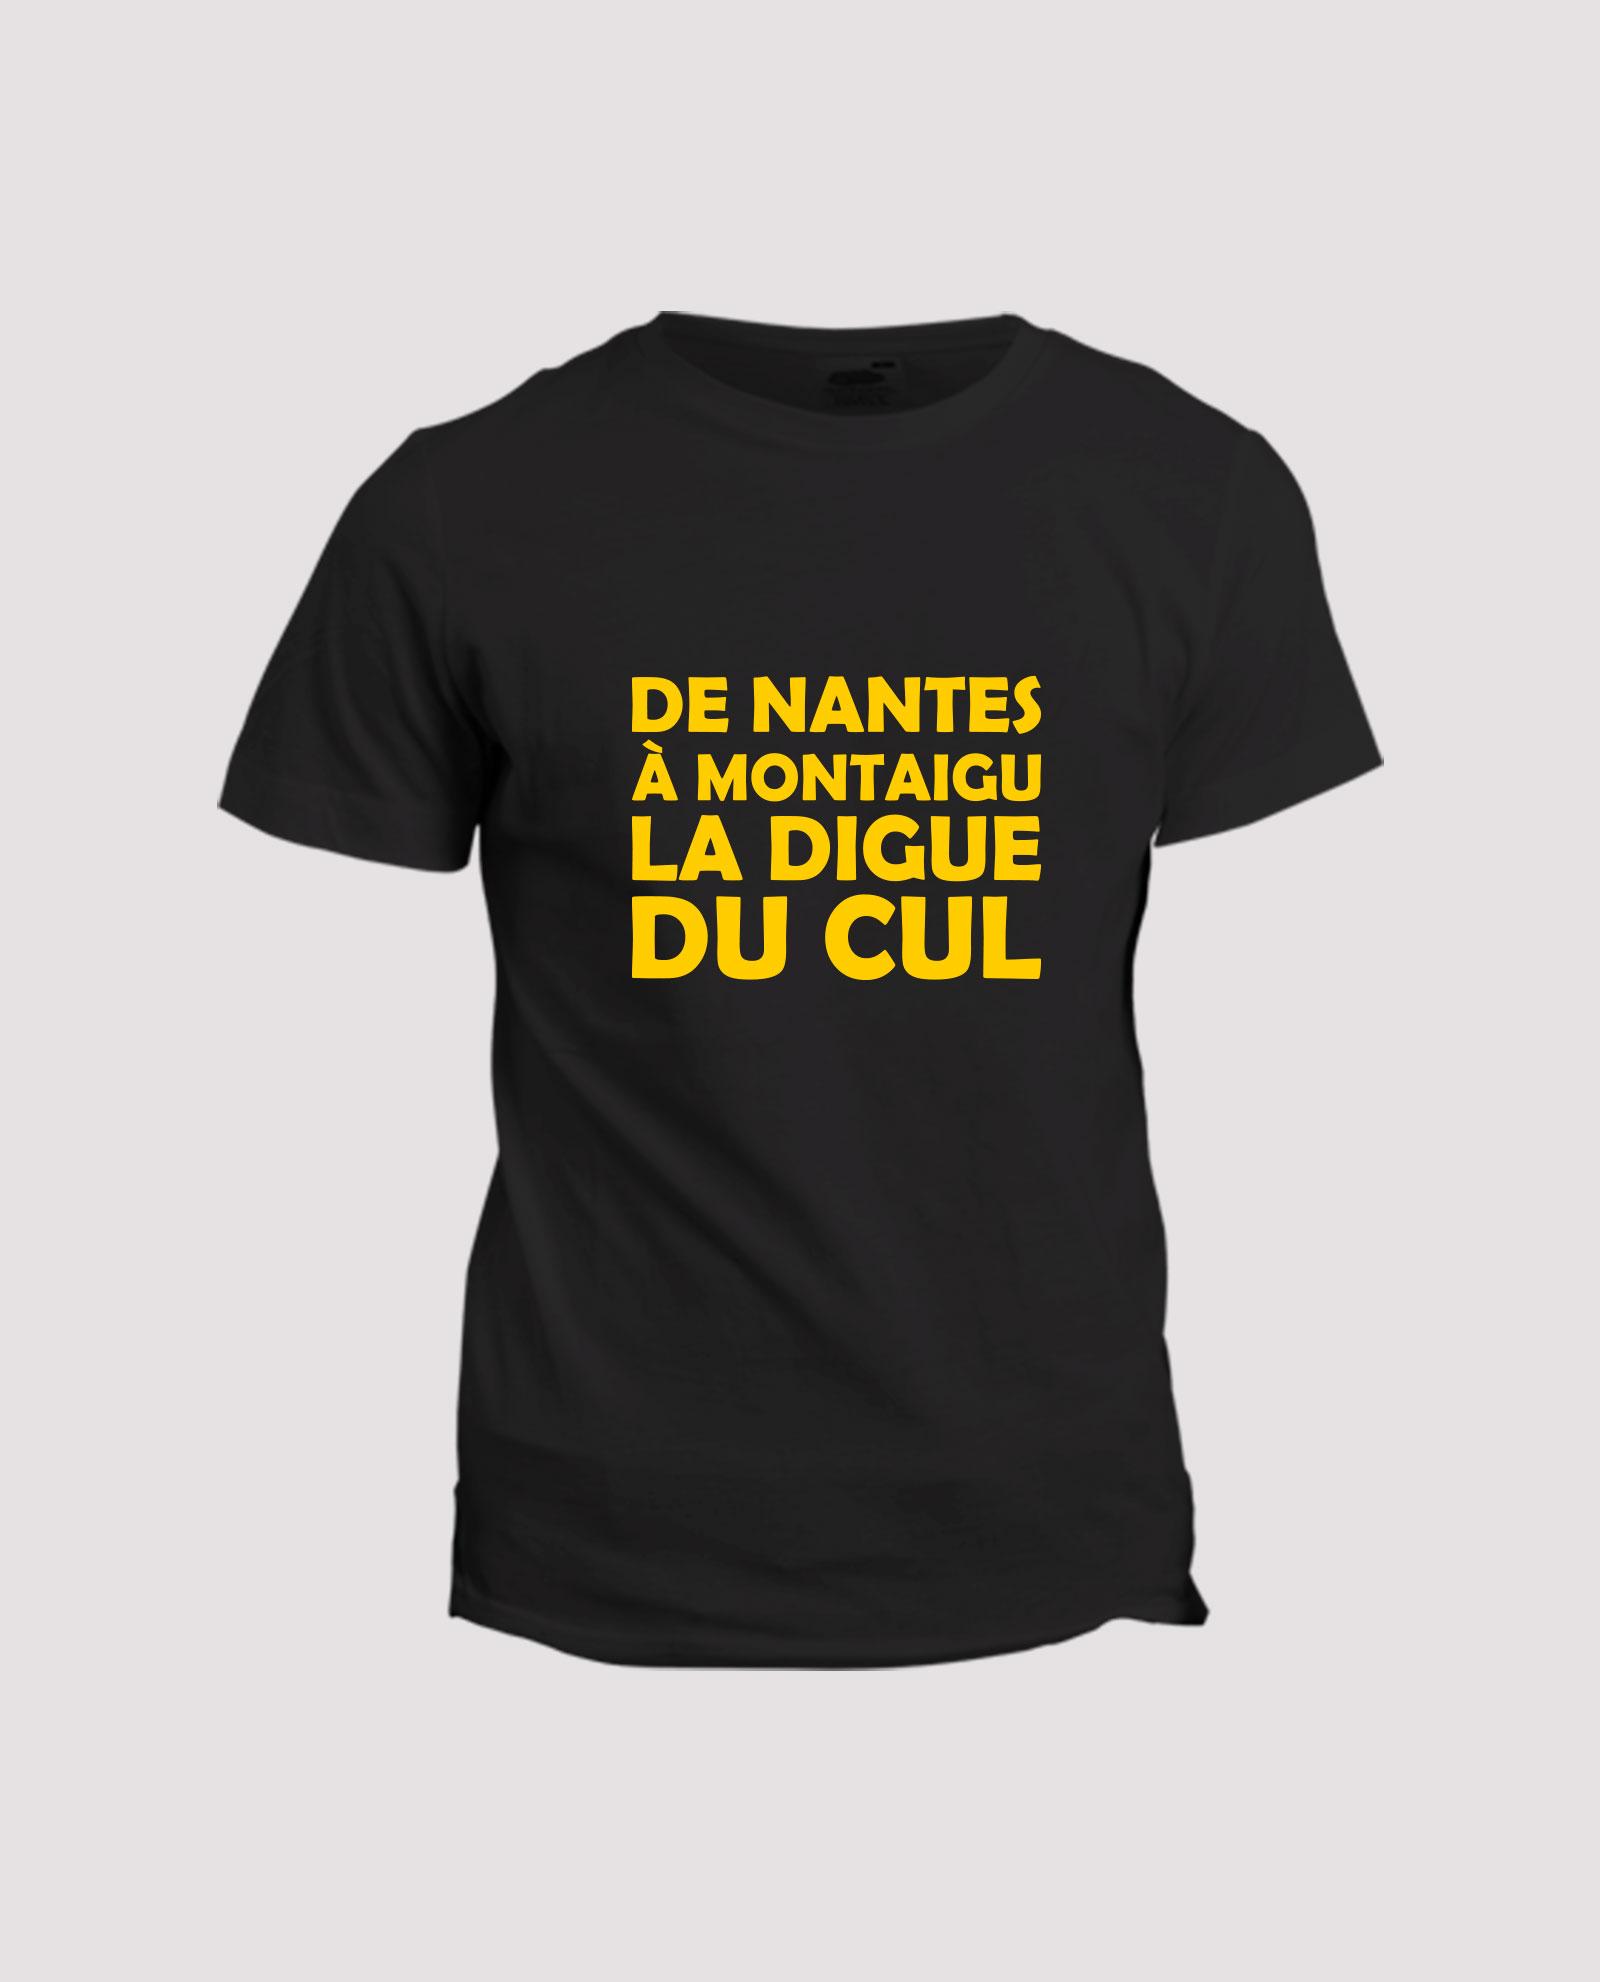 la-ligne-shop-t-shirt-noir-humour-chanson-paillarde-de-nantes-a-montaigu-la-digue-du-cul